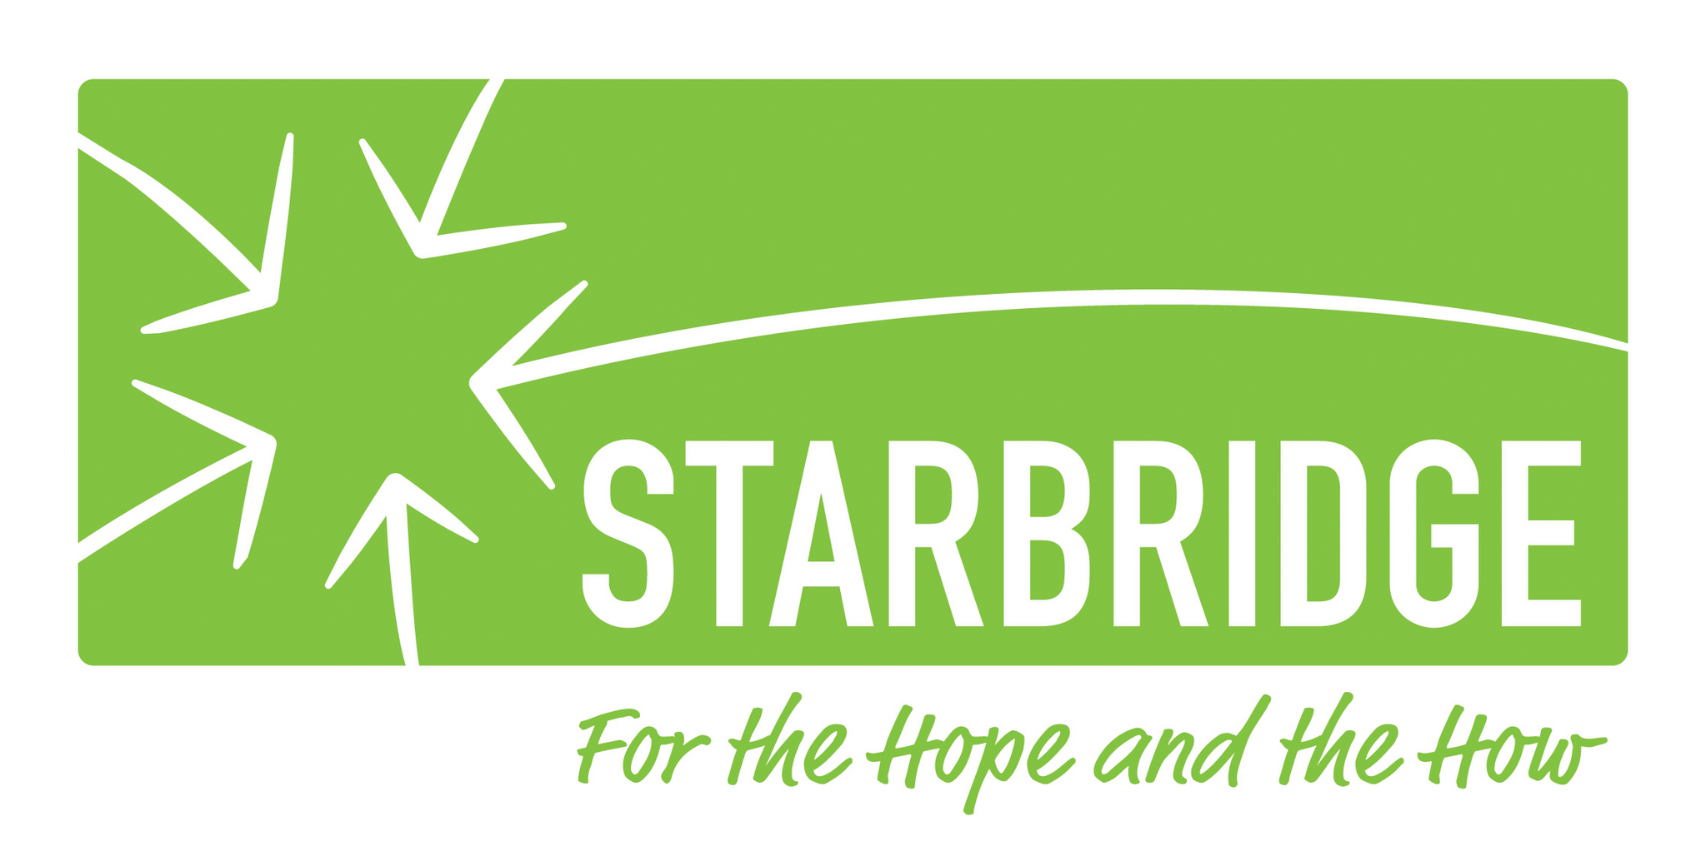 Starbridge logo.